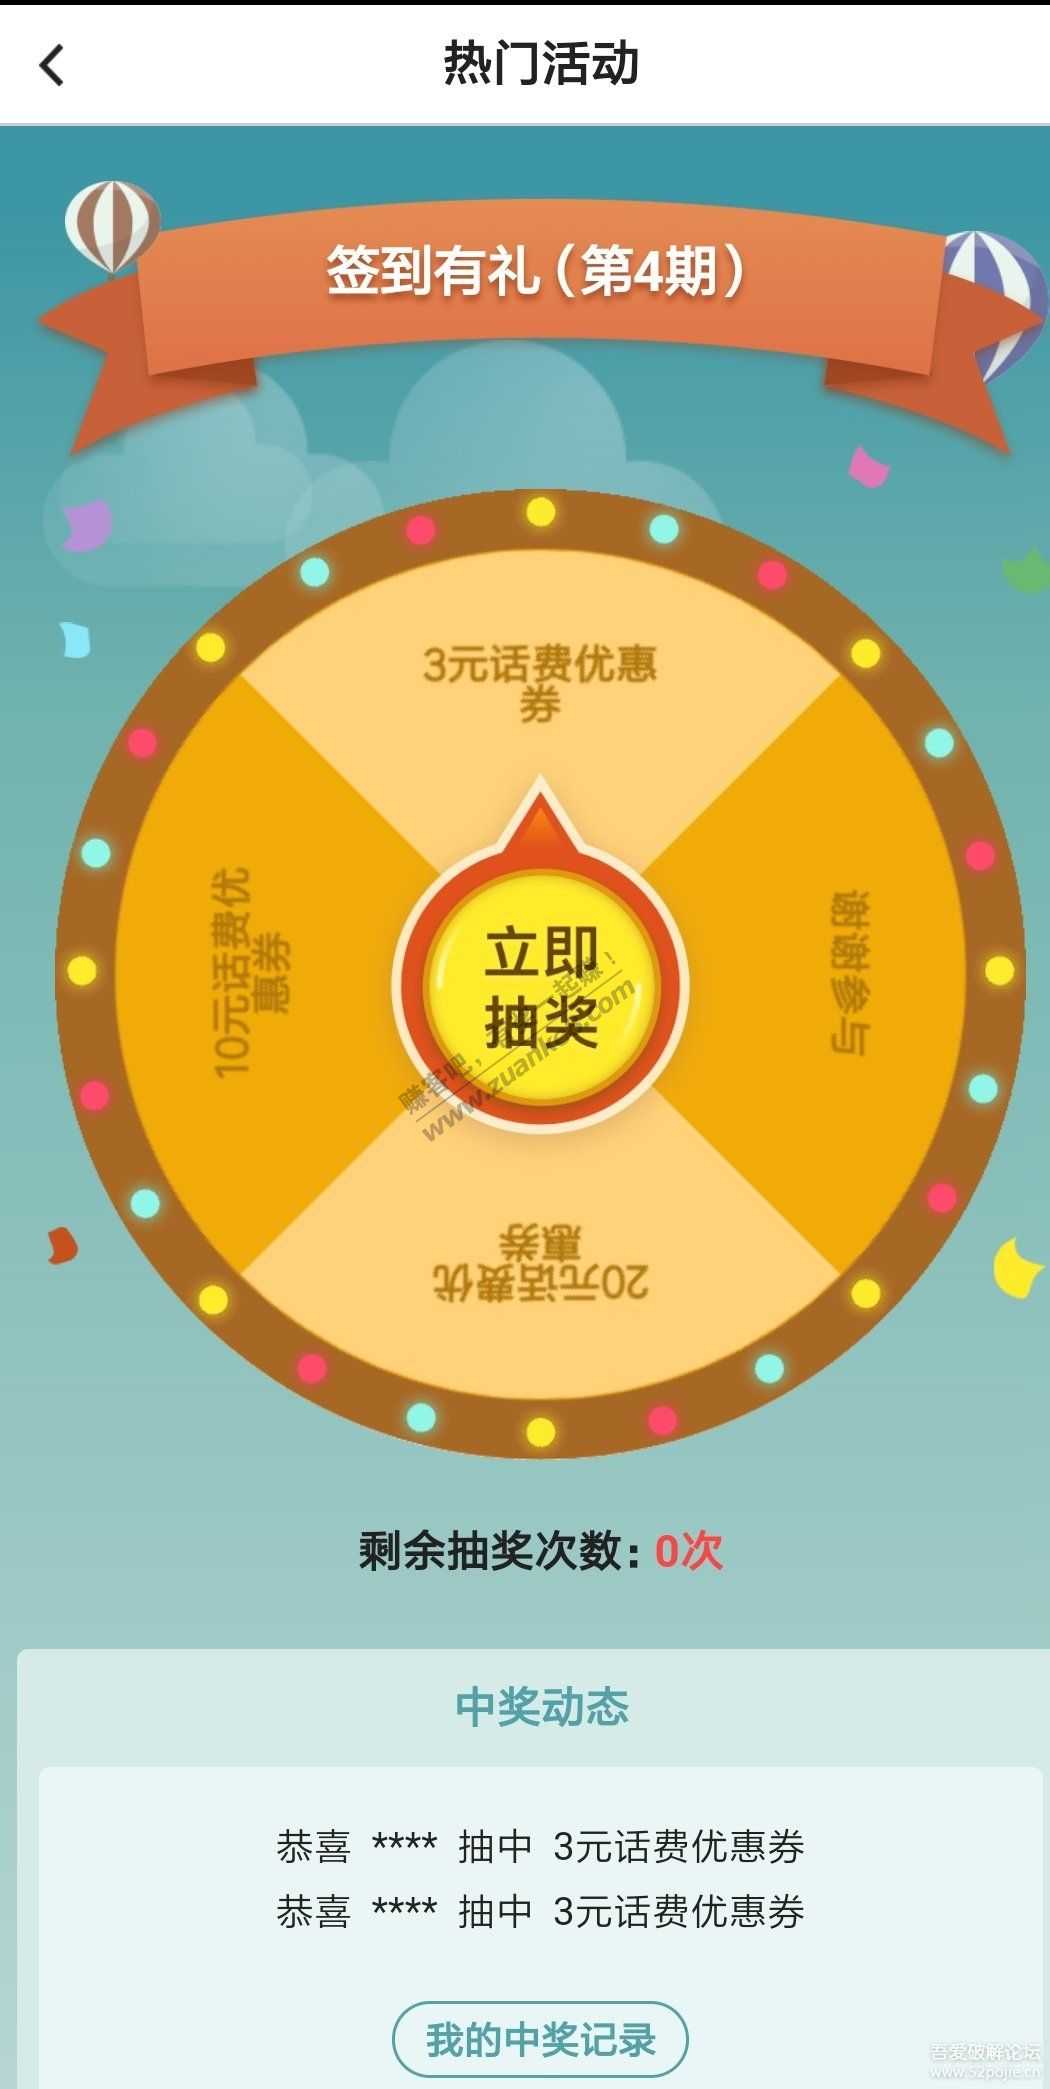 中国银行 25充30话费-惠小助(52huixz.com)